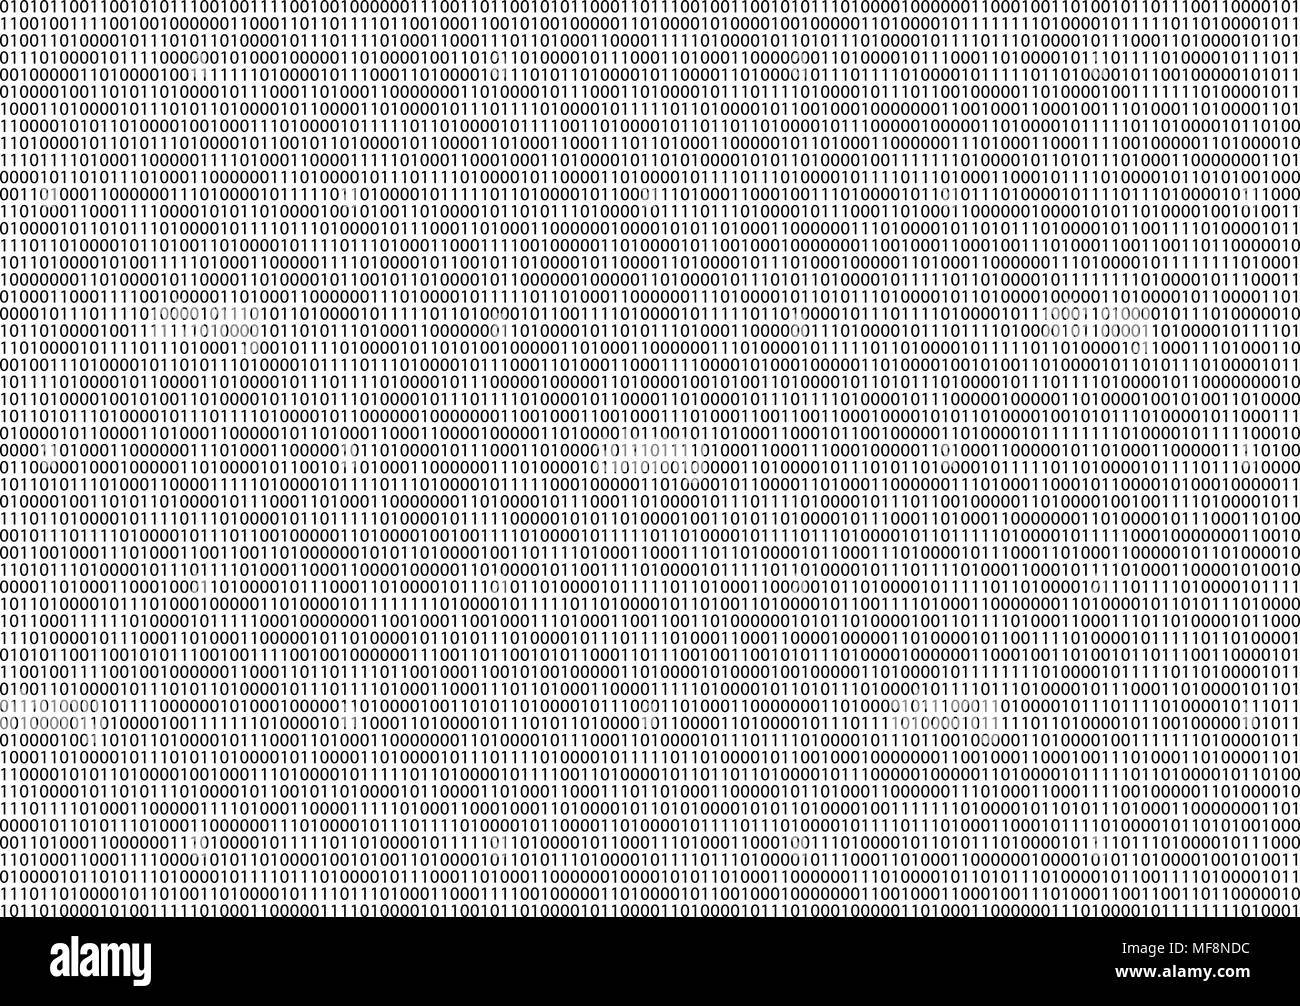 Der binäre Code Bildschirm Stock Vektor